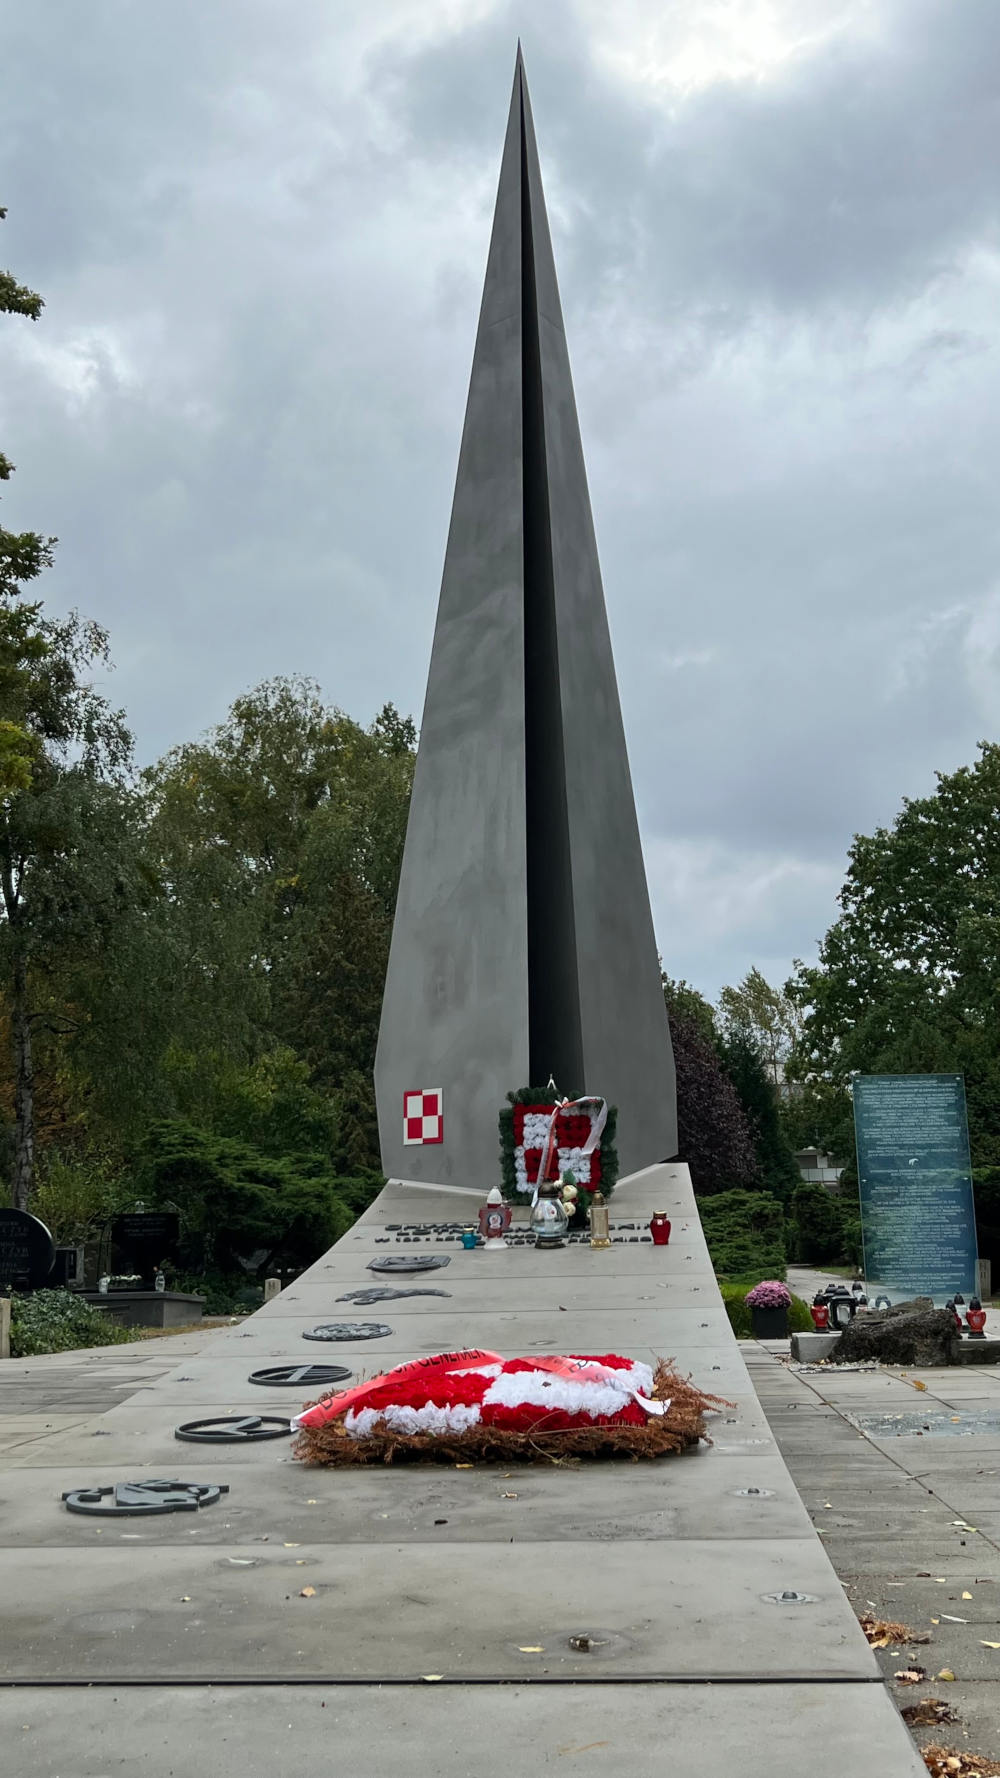 Pomnik „Chwała Lotnikom Polskim” na Wojskowych Powązkach w Warszawie - odsłonięty 28 sierpnia 2018r. - Foto: Aviation24.pl